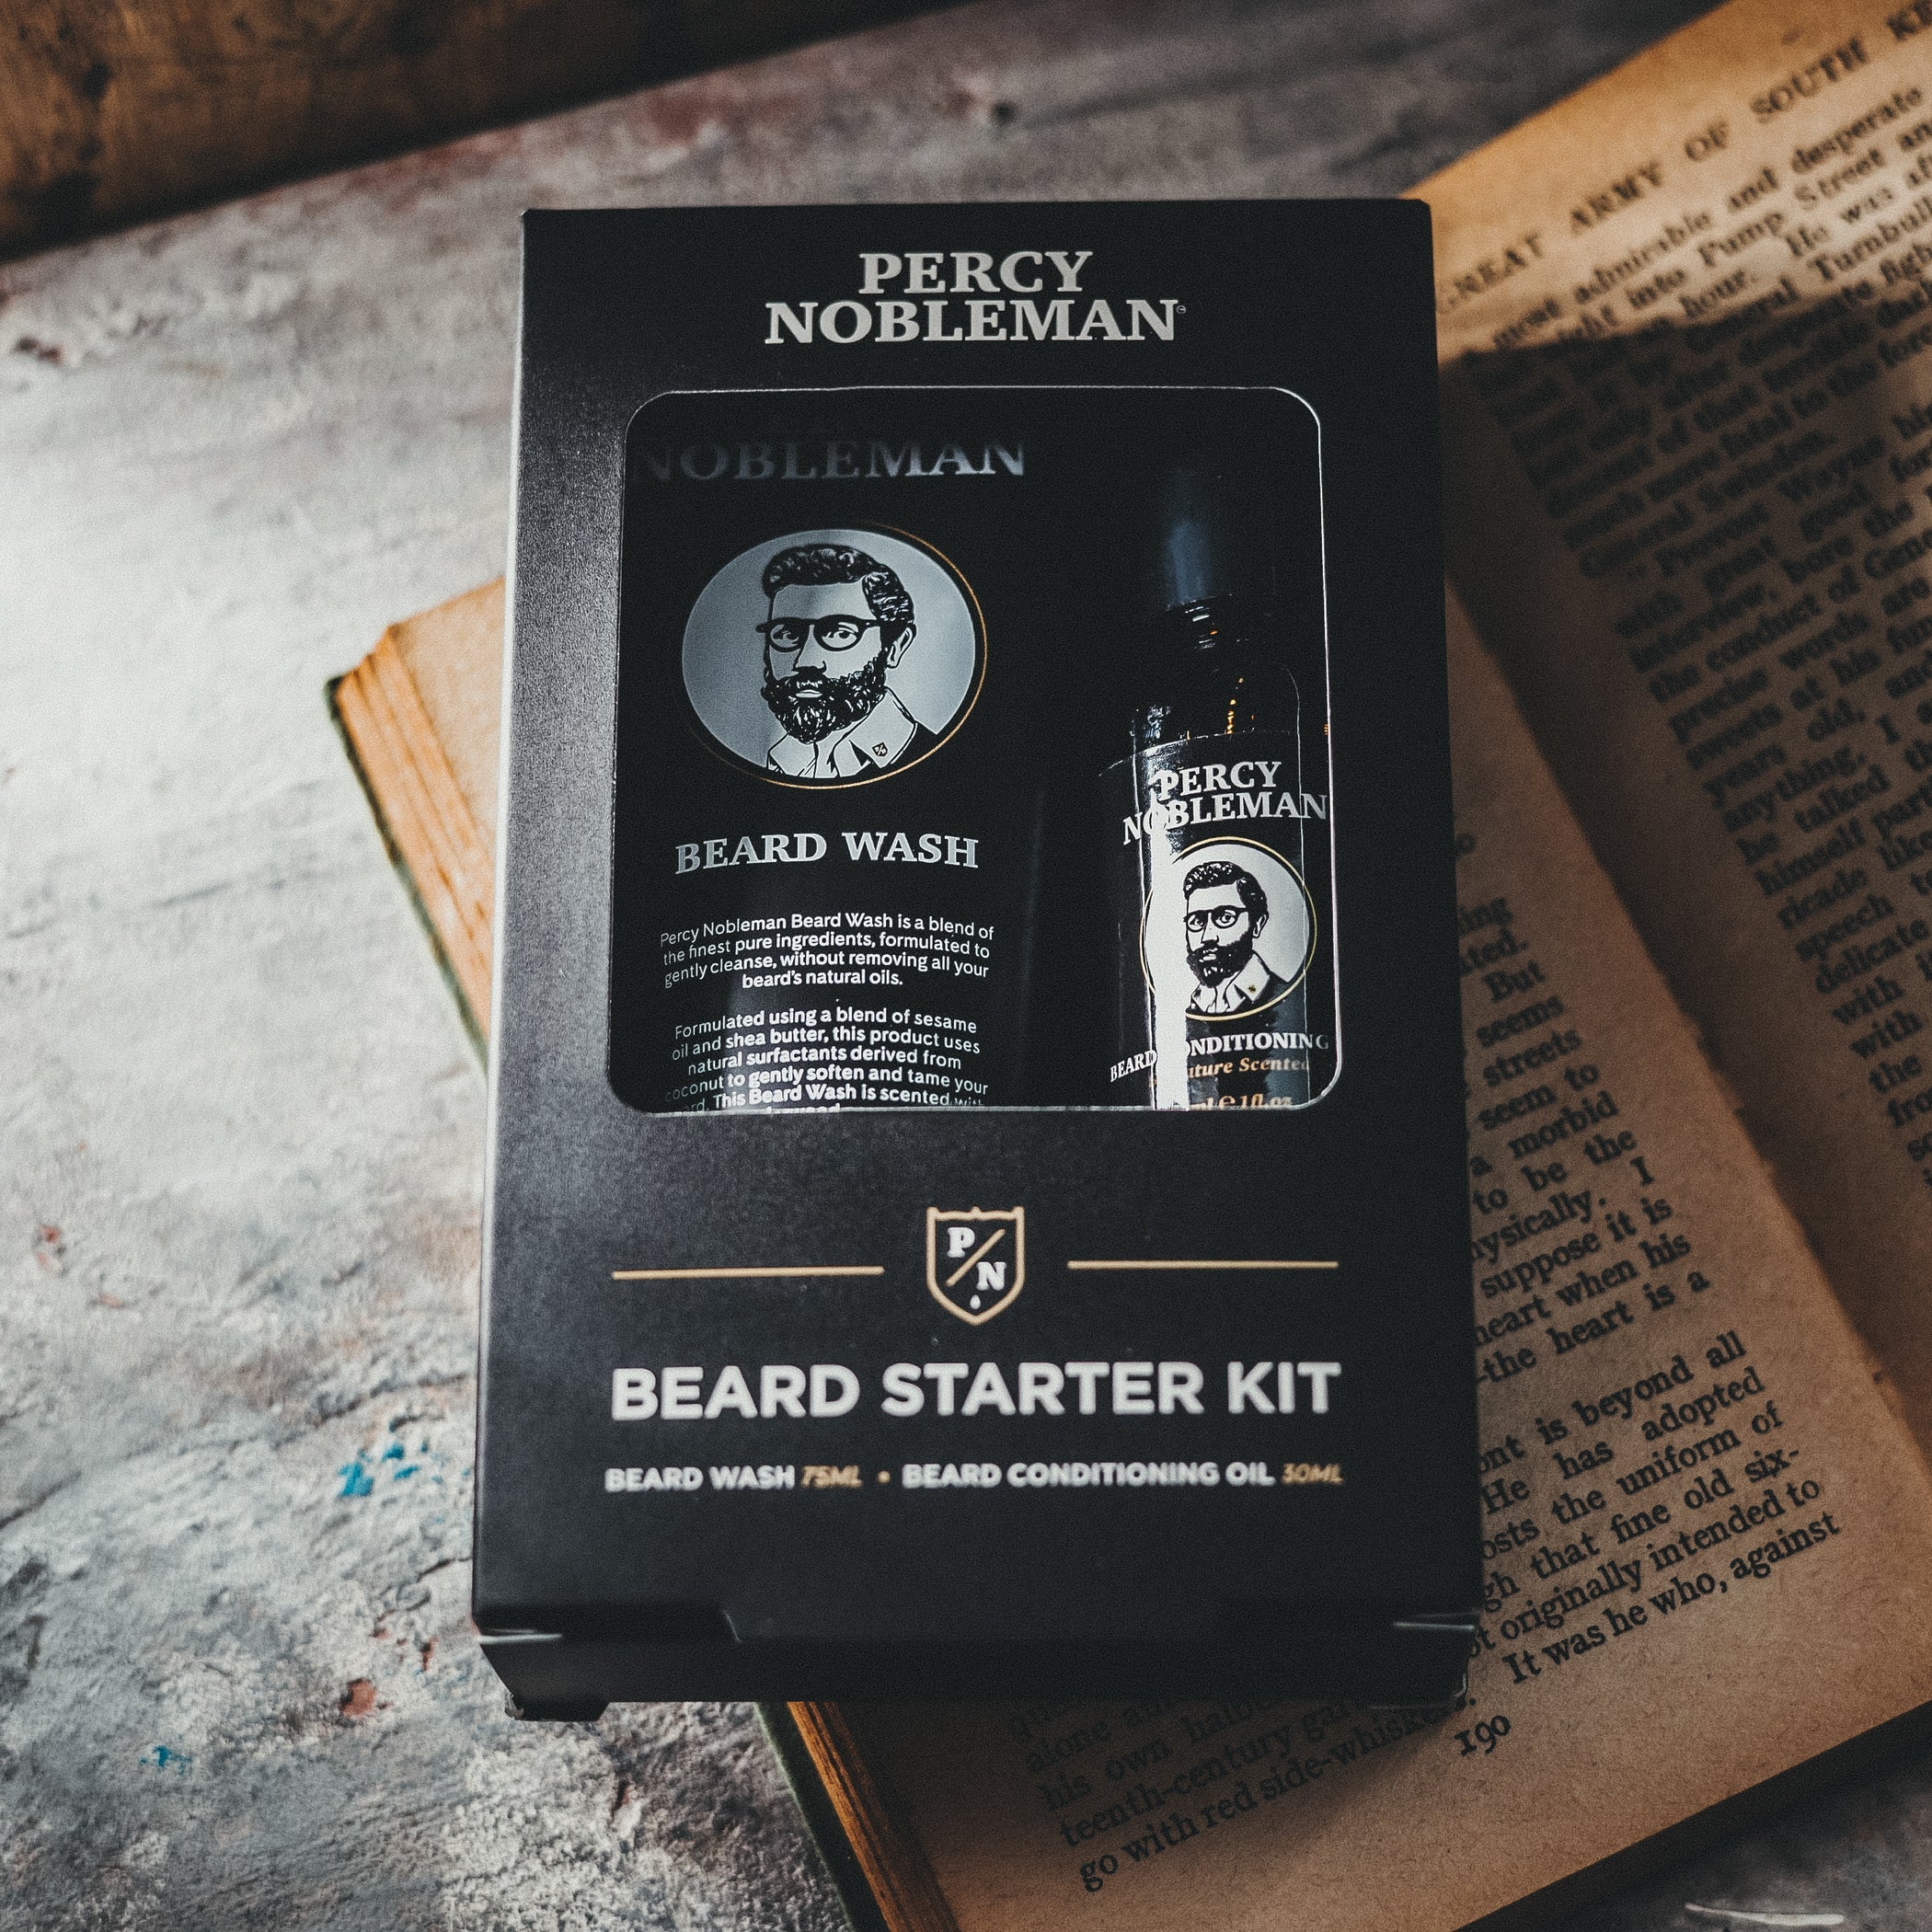 Percy Nobleman Beard Starter Kit غسول وزيت اللحية من بيرسي نوبل مان